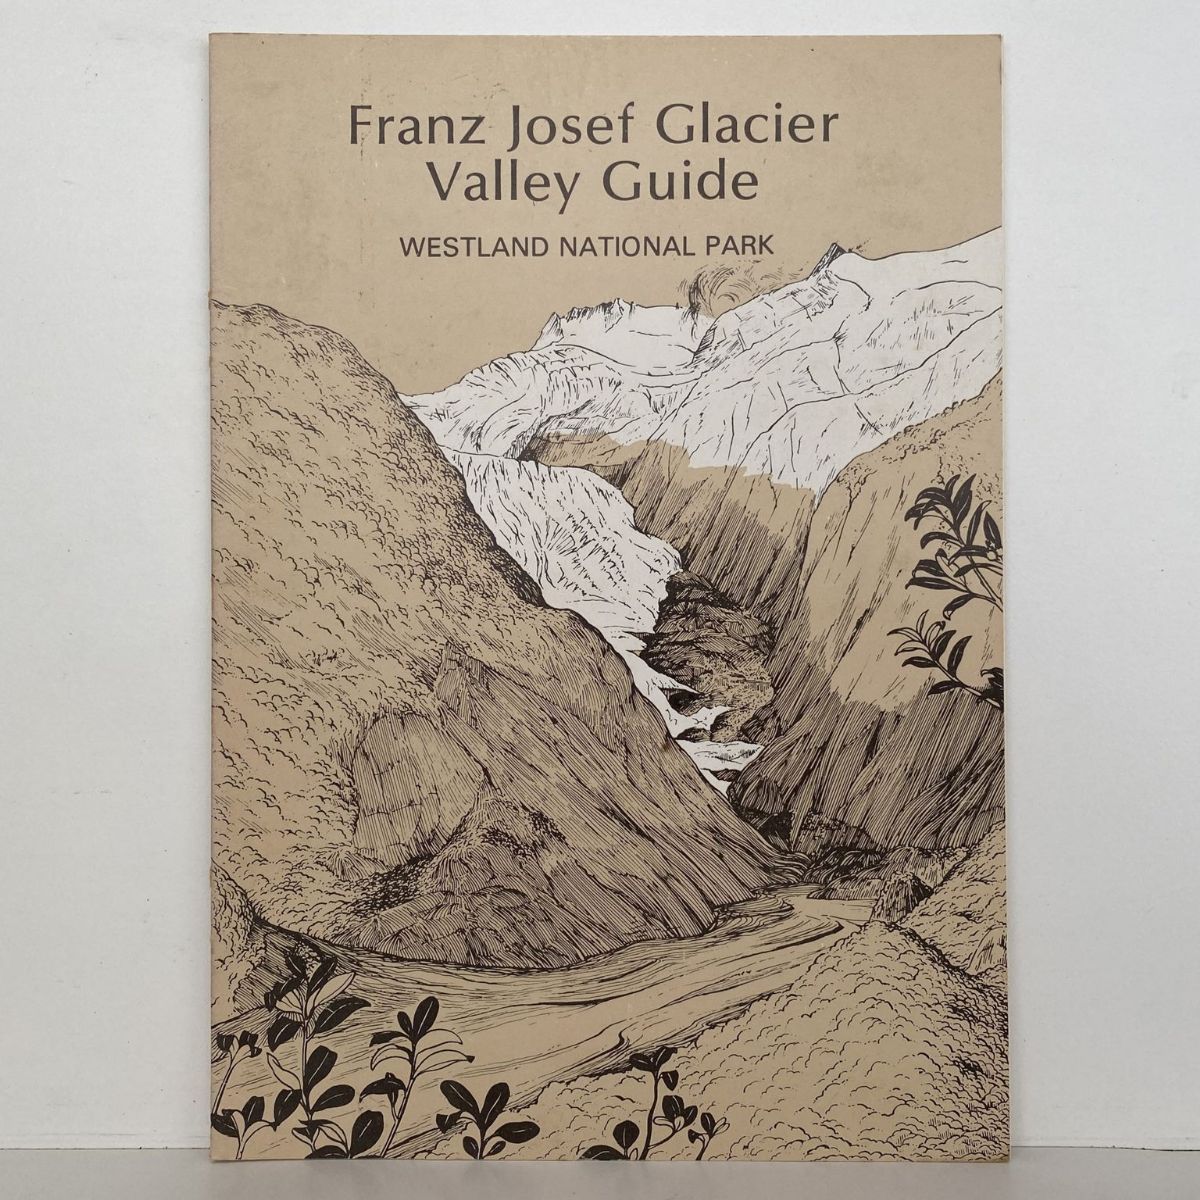 Franz Josef Glacier Valley Guide - Westland National Park